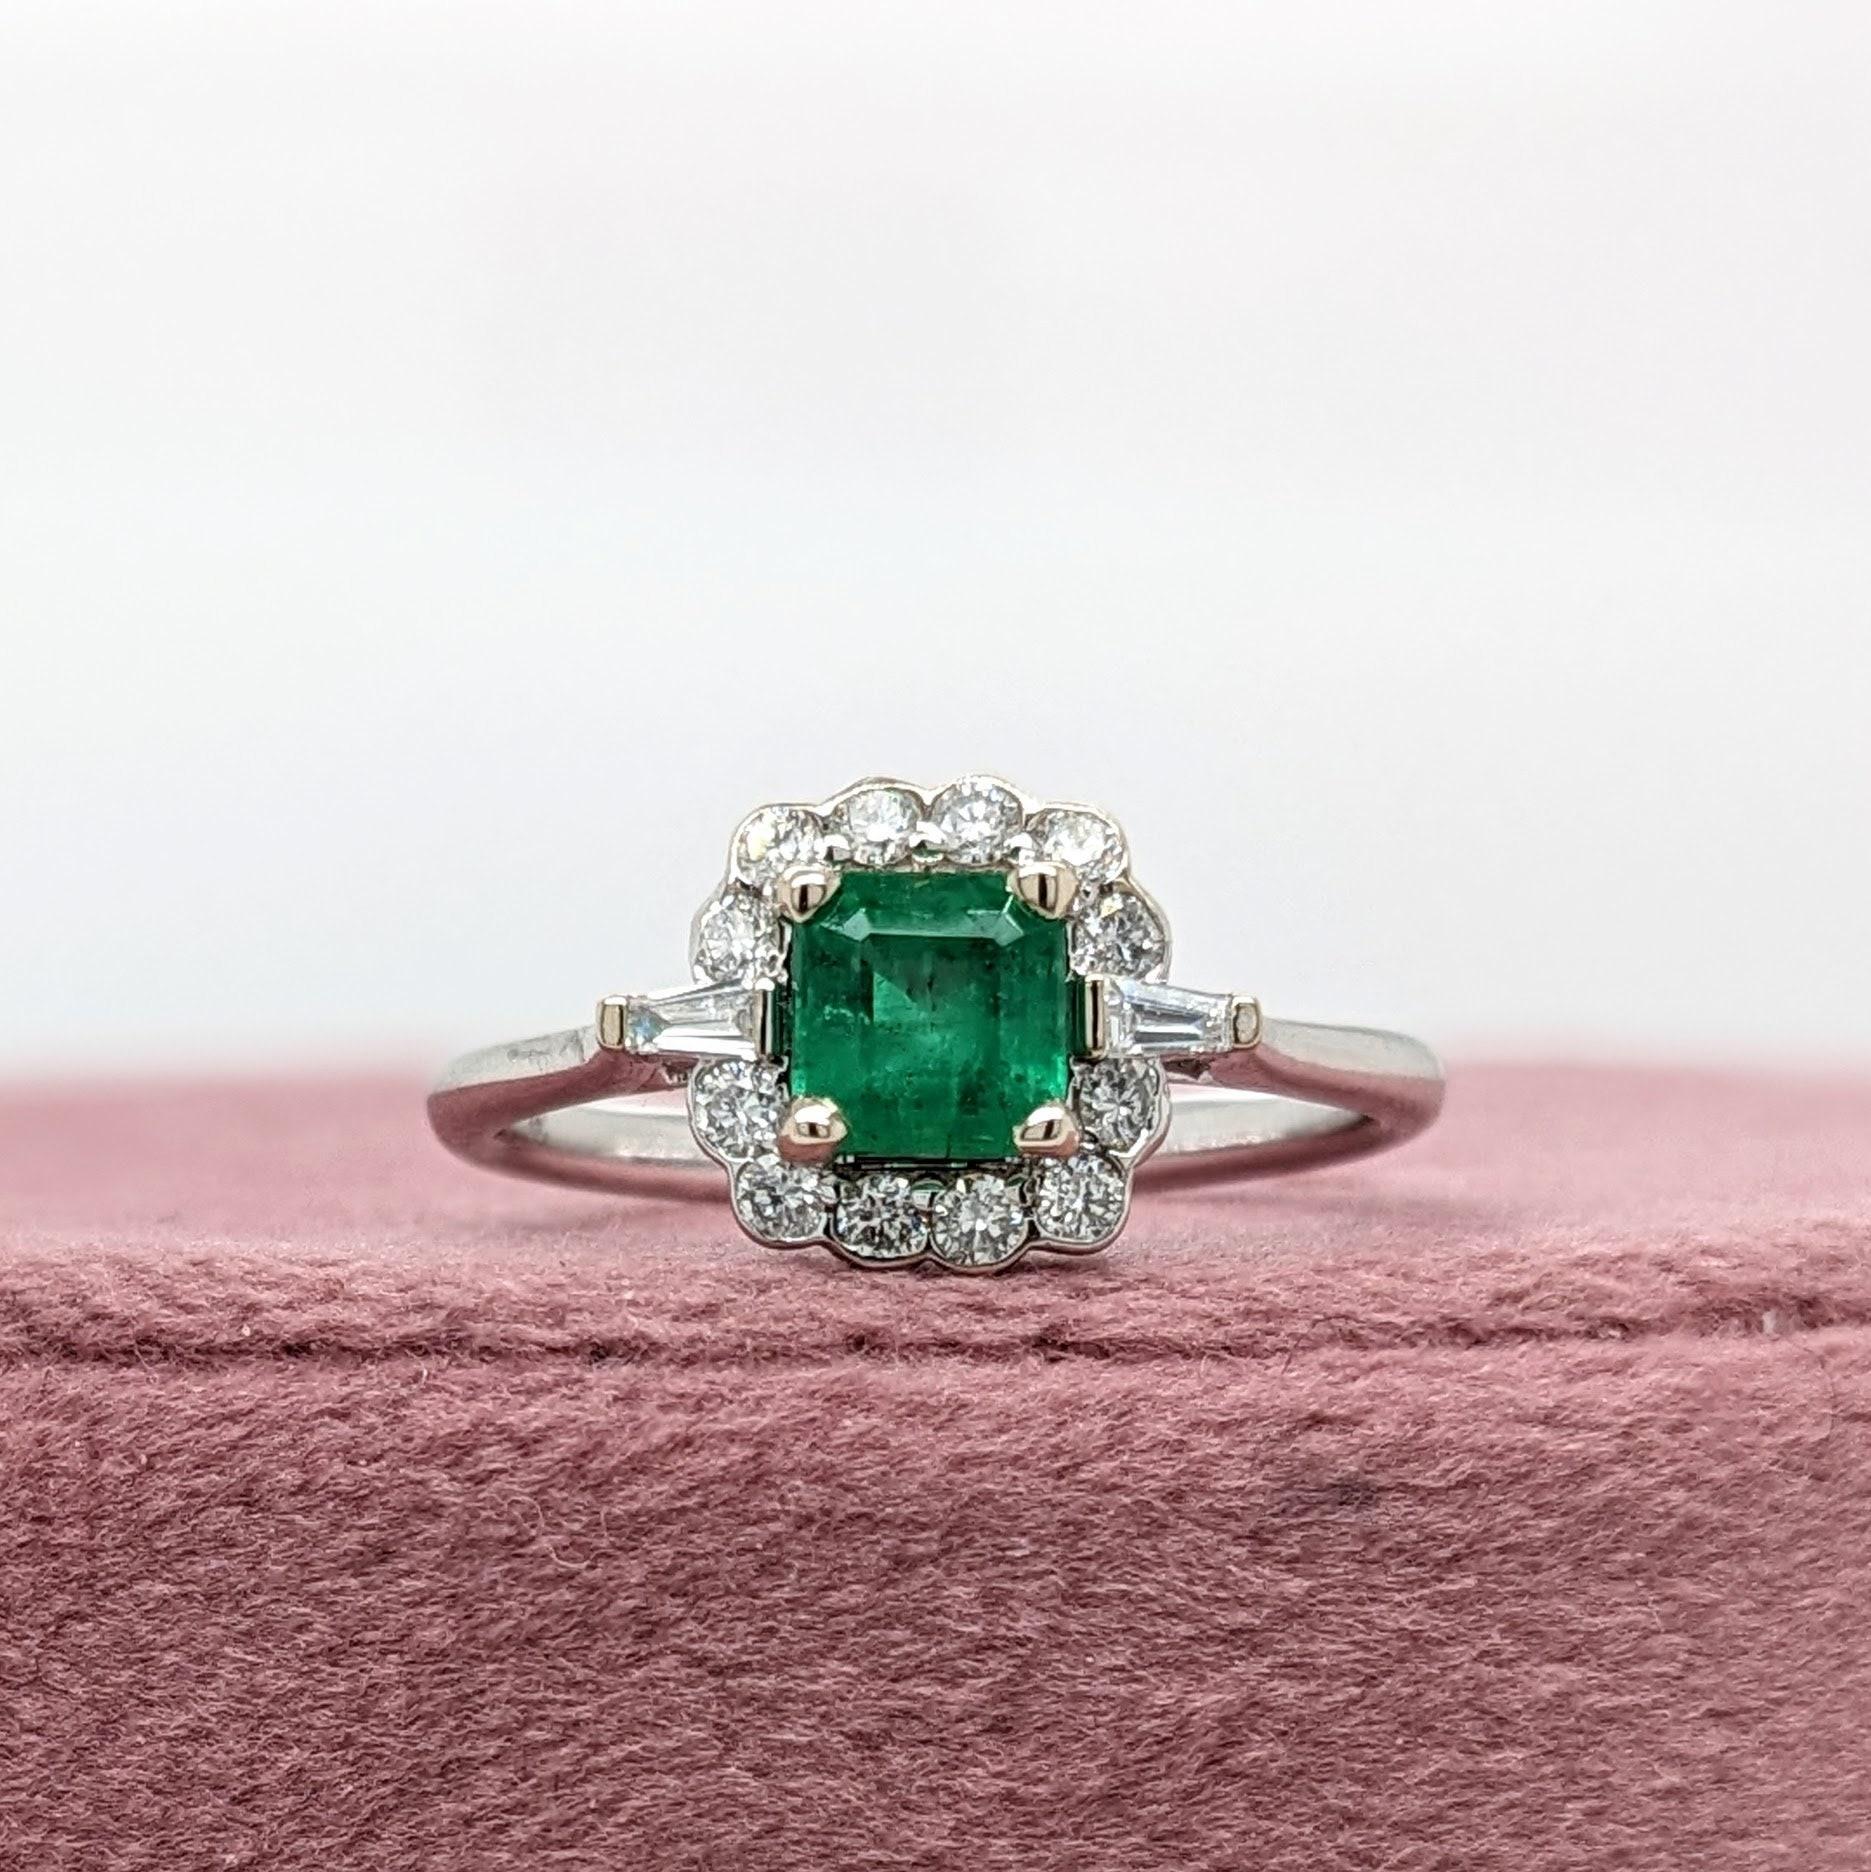 Dieses schöne, ausgewogene Ringdesign zeigt einen prächtigen sambischen Smaragd mit einem unglaublichen grasgrünen Farbton. Er hat die richtige Größe für ein tägliches Accessoire und sieht in einem kugelförmigen Halo aus Diamanten mit zwei spitz